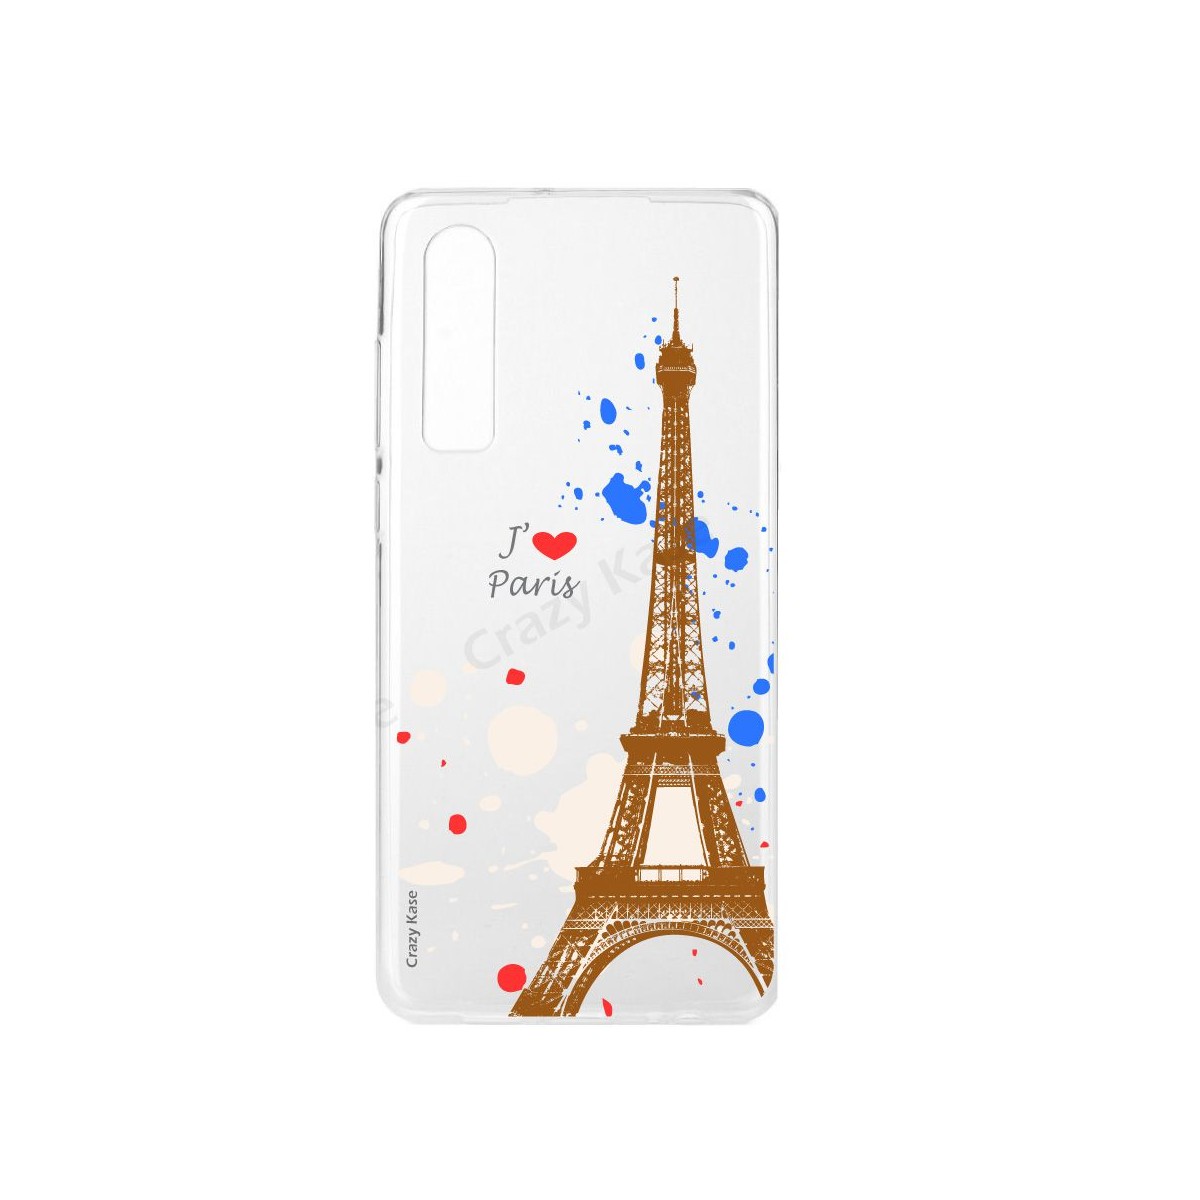 Coque Galaxy A7 (2018) souple Paris -  Crazy Kase